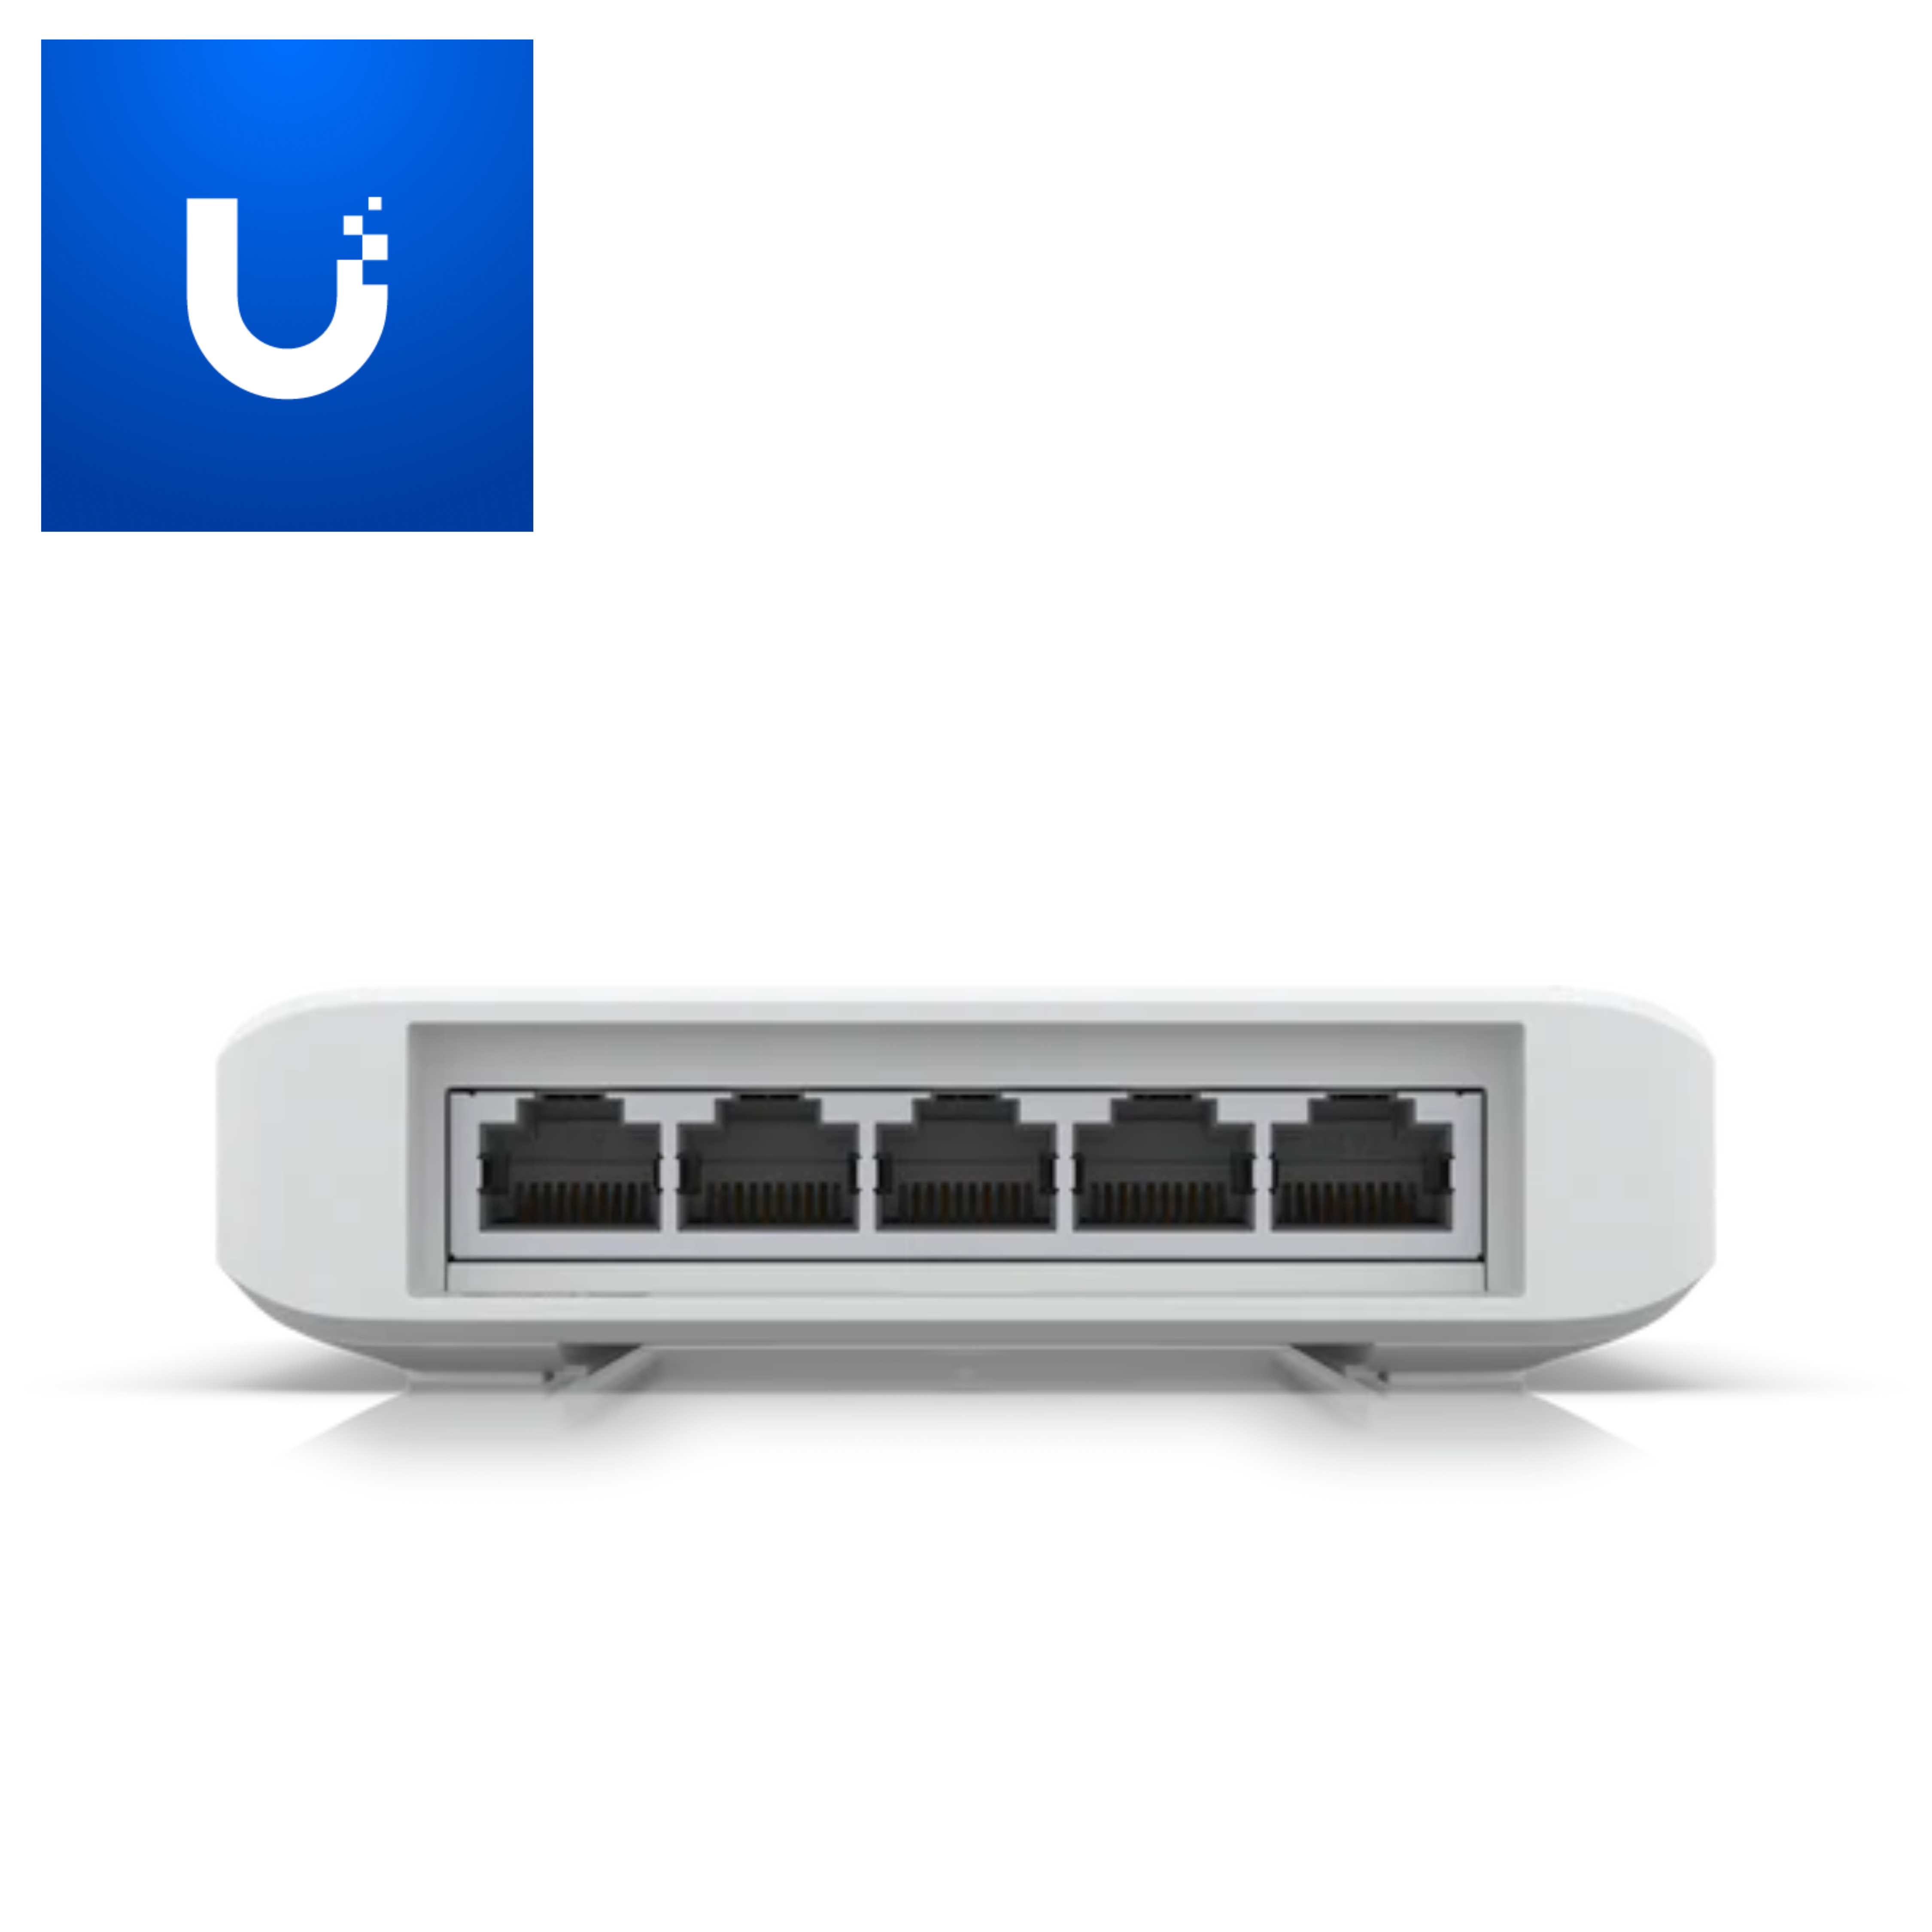 UniFi USW-Flex (5-Port Flex Switch)